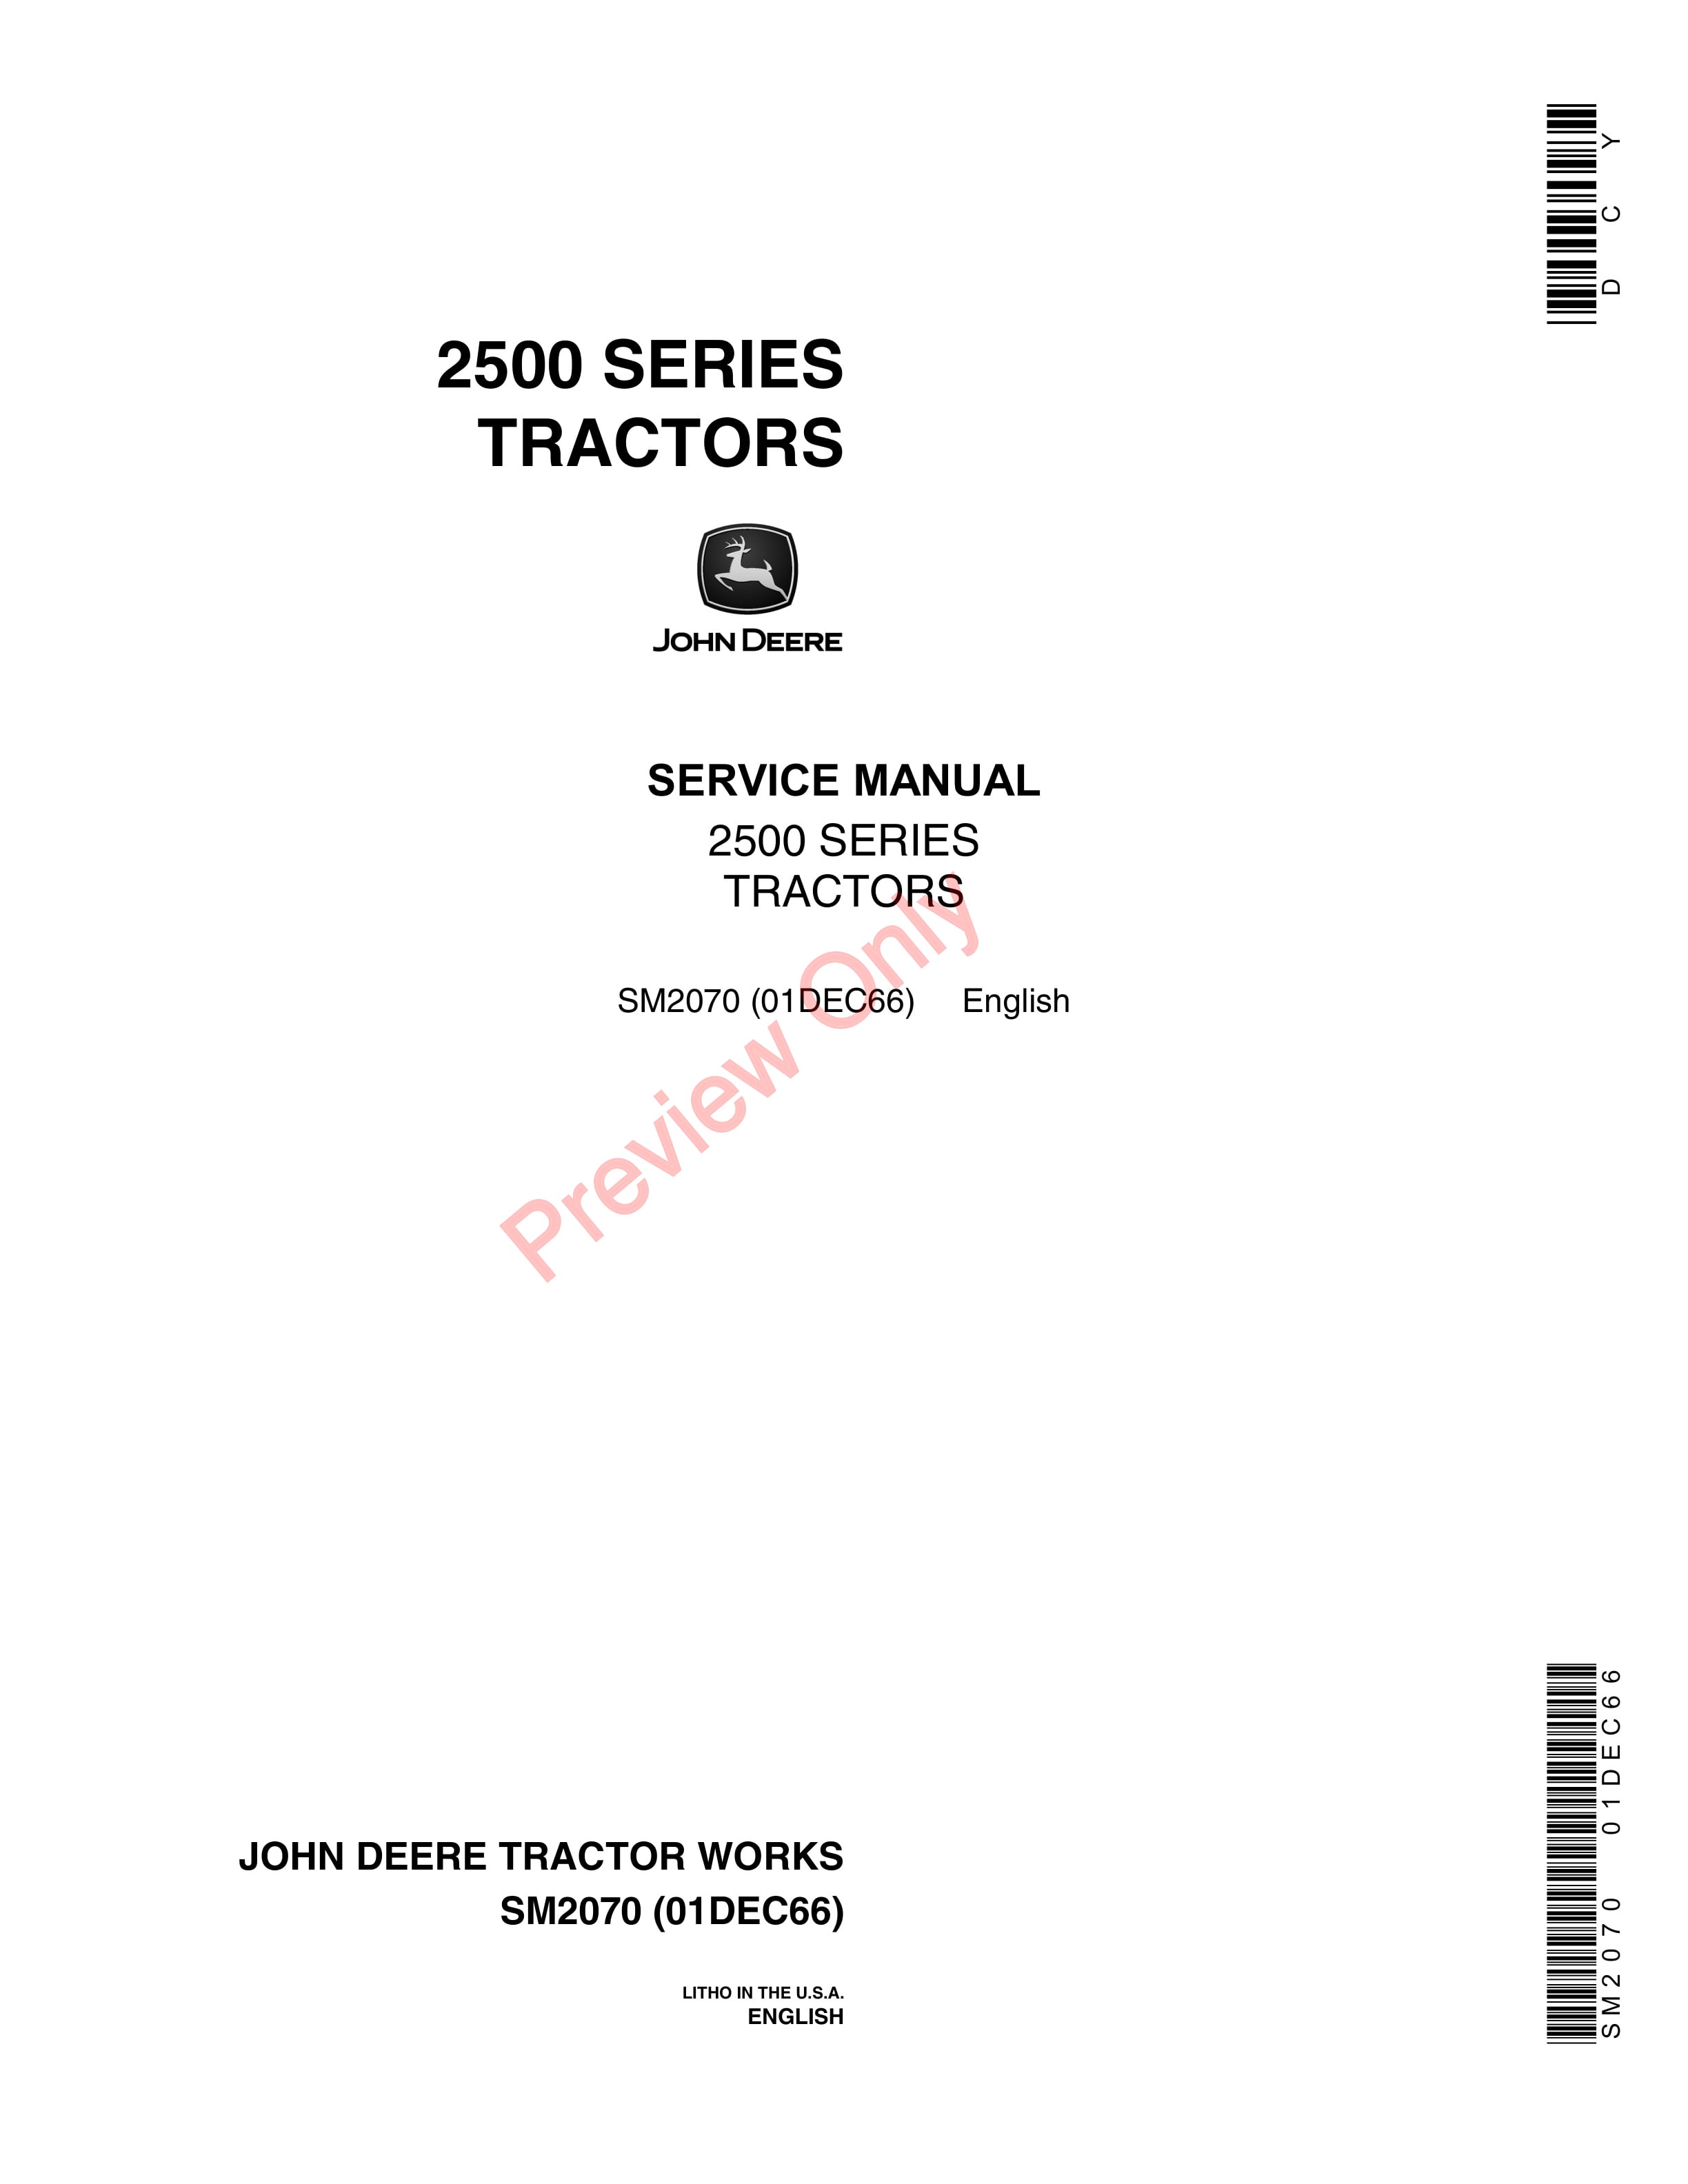 John Deere 2500 Series Tractors Service Manual SM2070 01DEC66-1